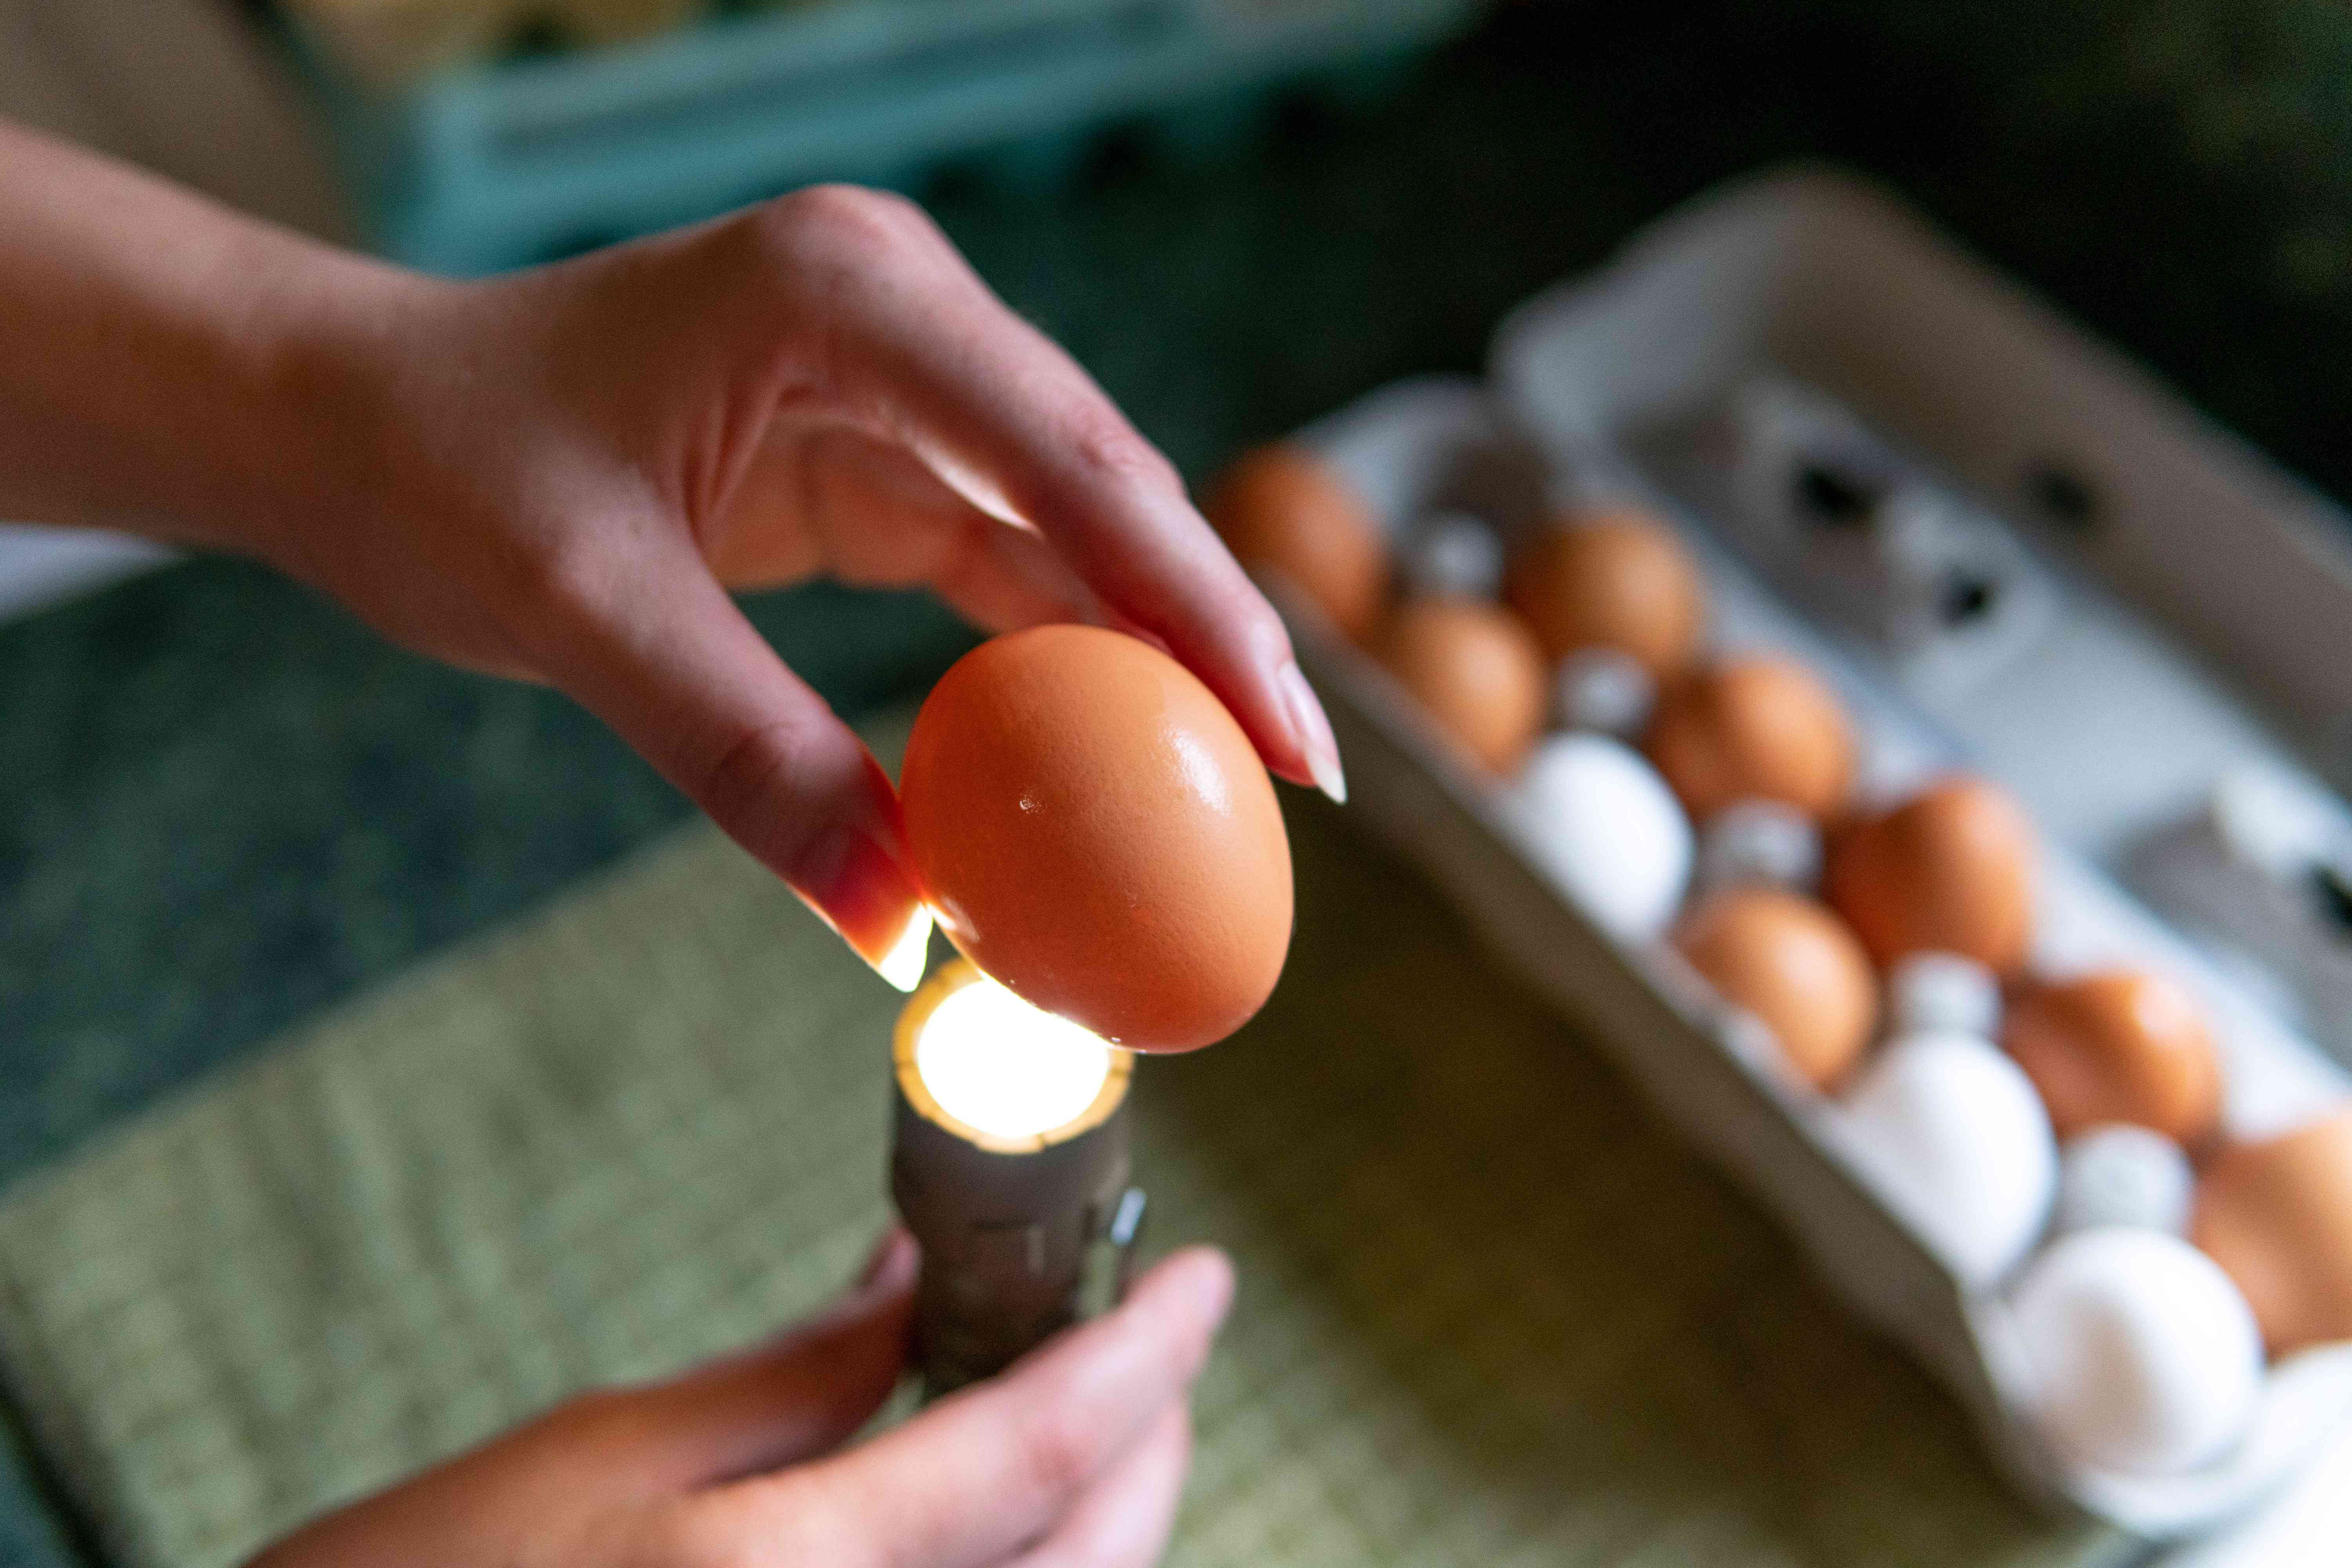 用手电筒检查鸡蛋